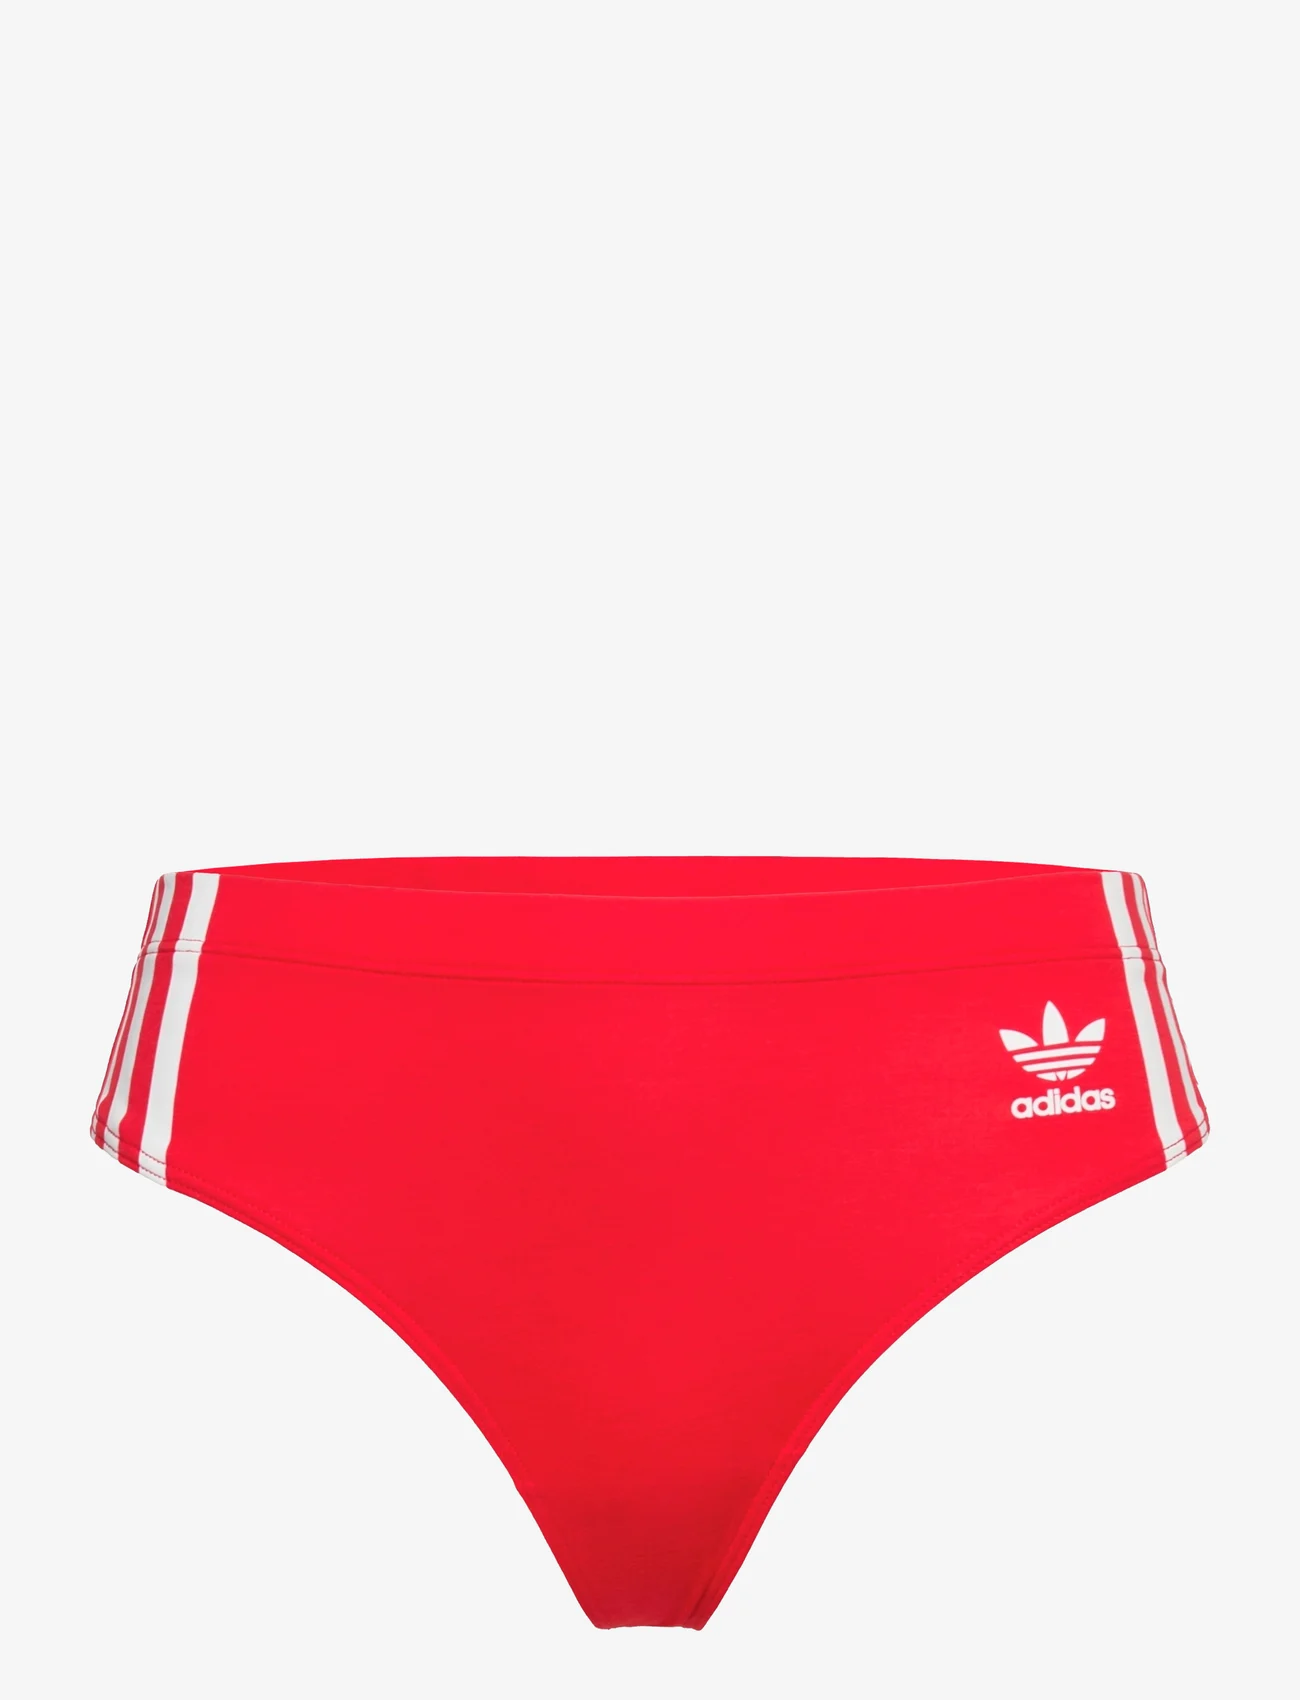 adidas Originals Underwear - Thong - die niedrigsten preise - red - 0